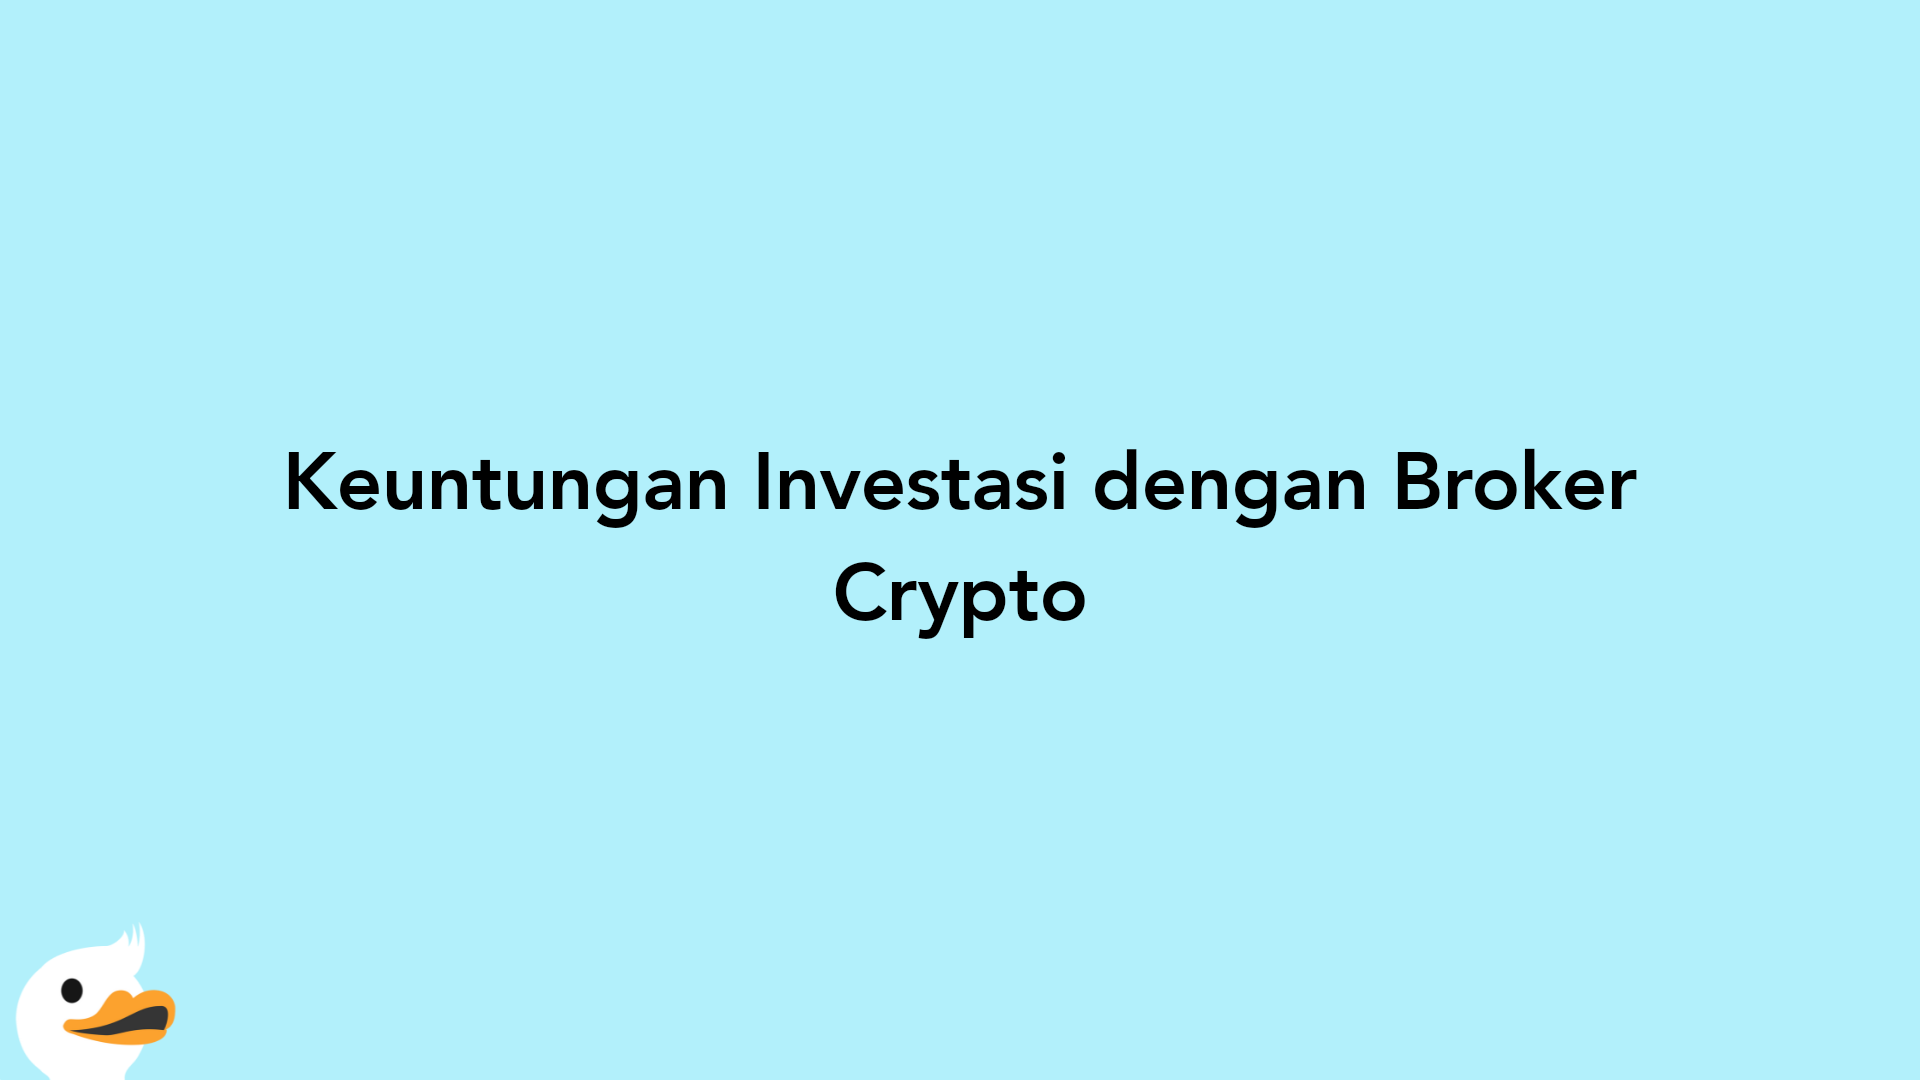 Keuntungan Investasi dengan Broker Crypto